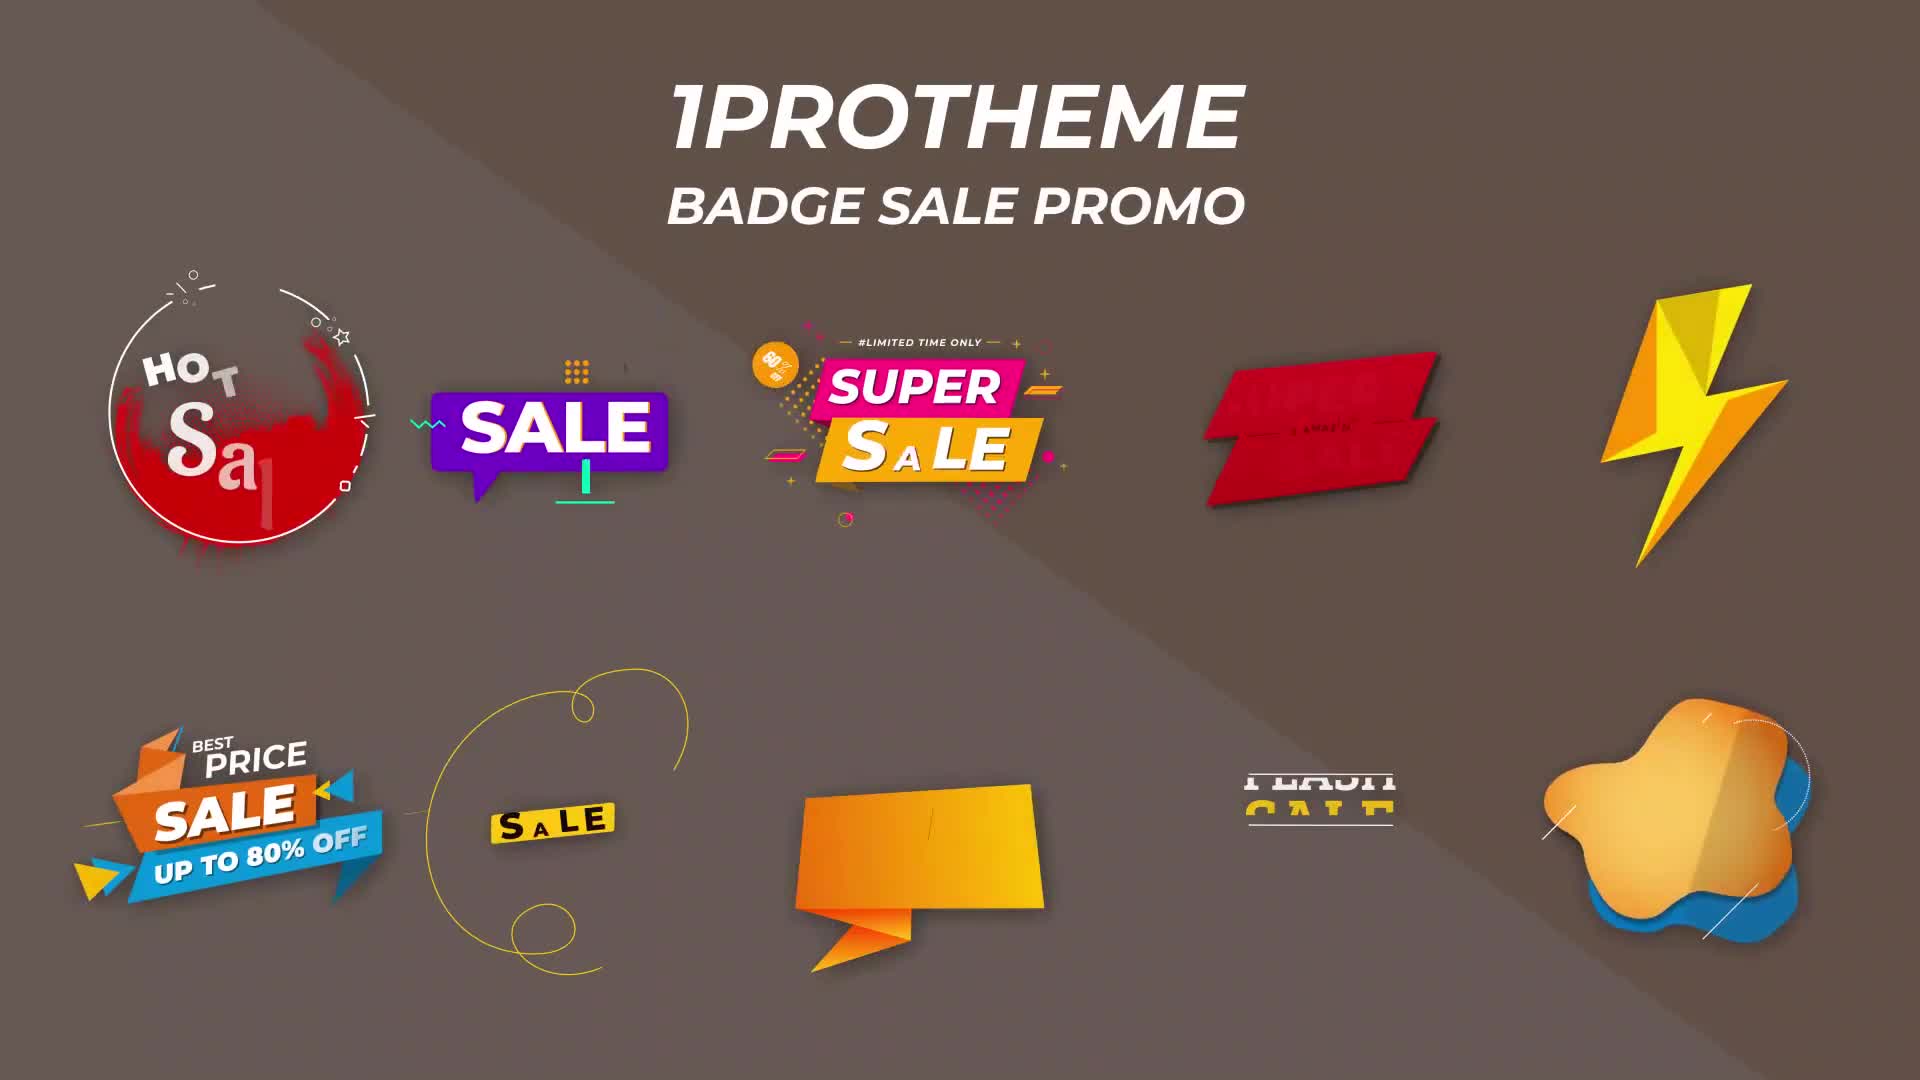 Badges Sale Promo Mogrt 15 Videohive 34088411 Premiere Pro Image 1